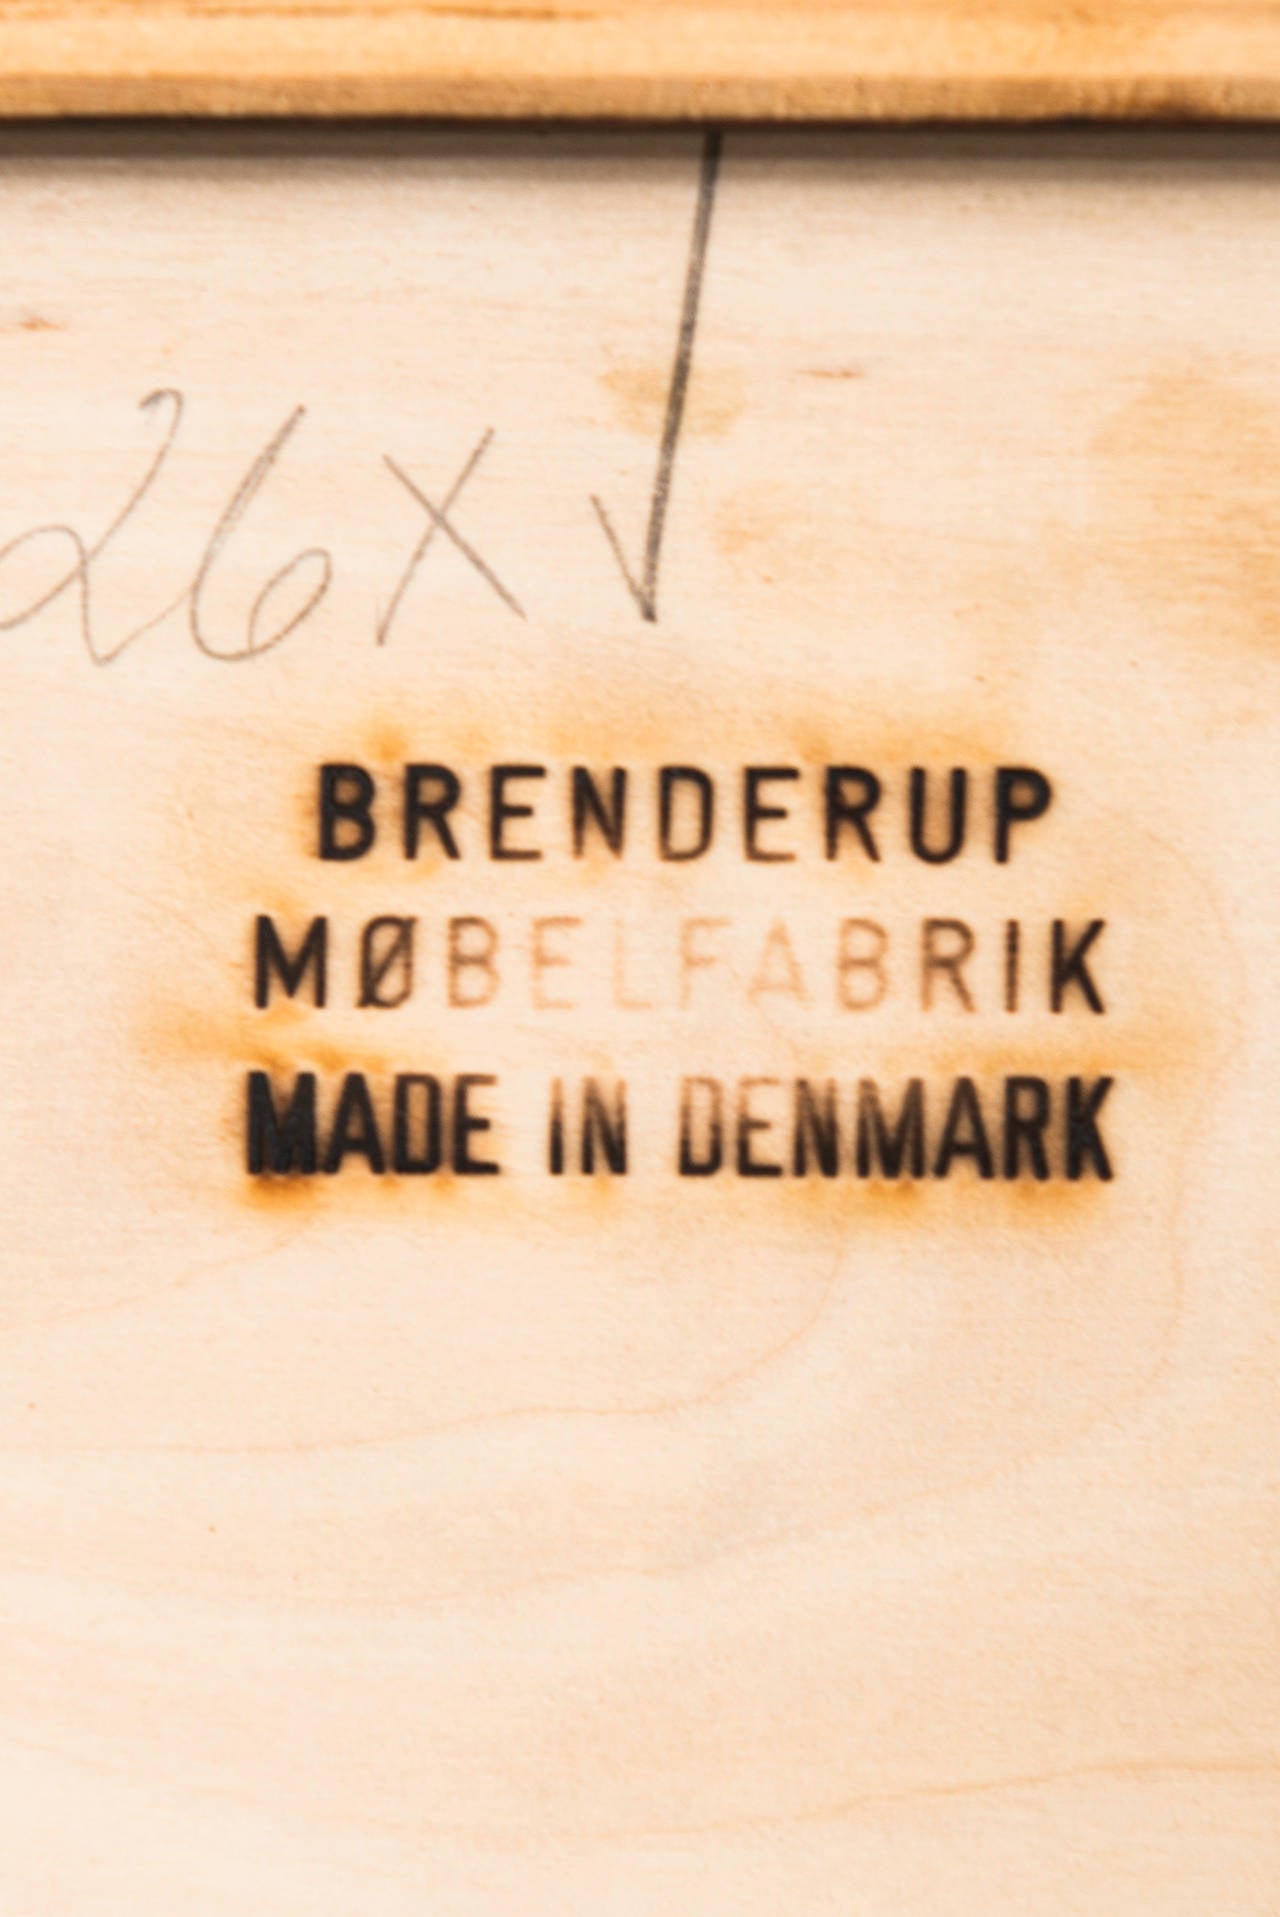 Arne-Wahl Iversen Bar Cabinet by Brenderup Møbelfabrik in Denmark 2